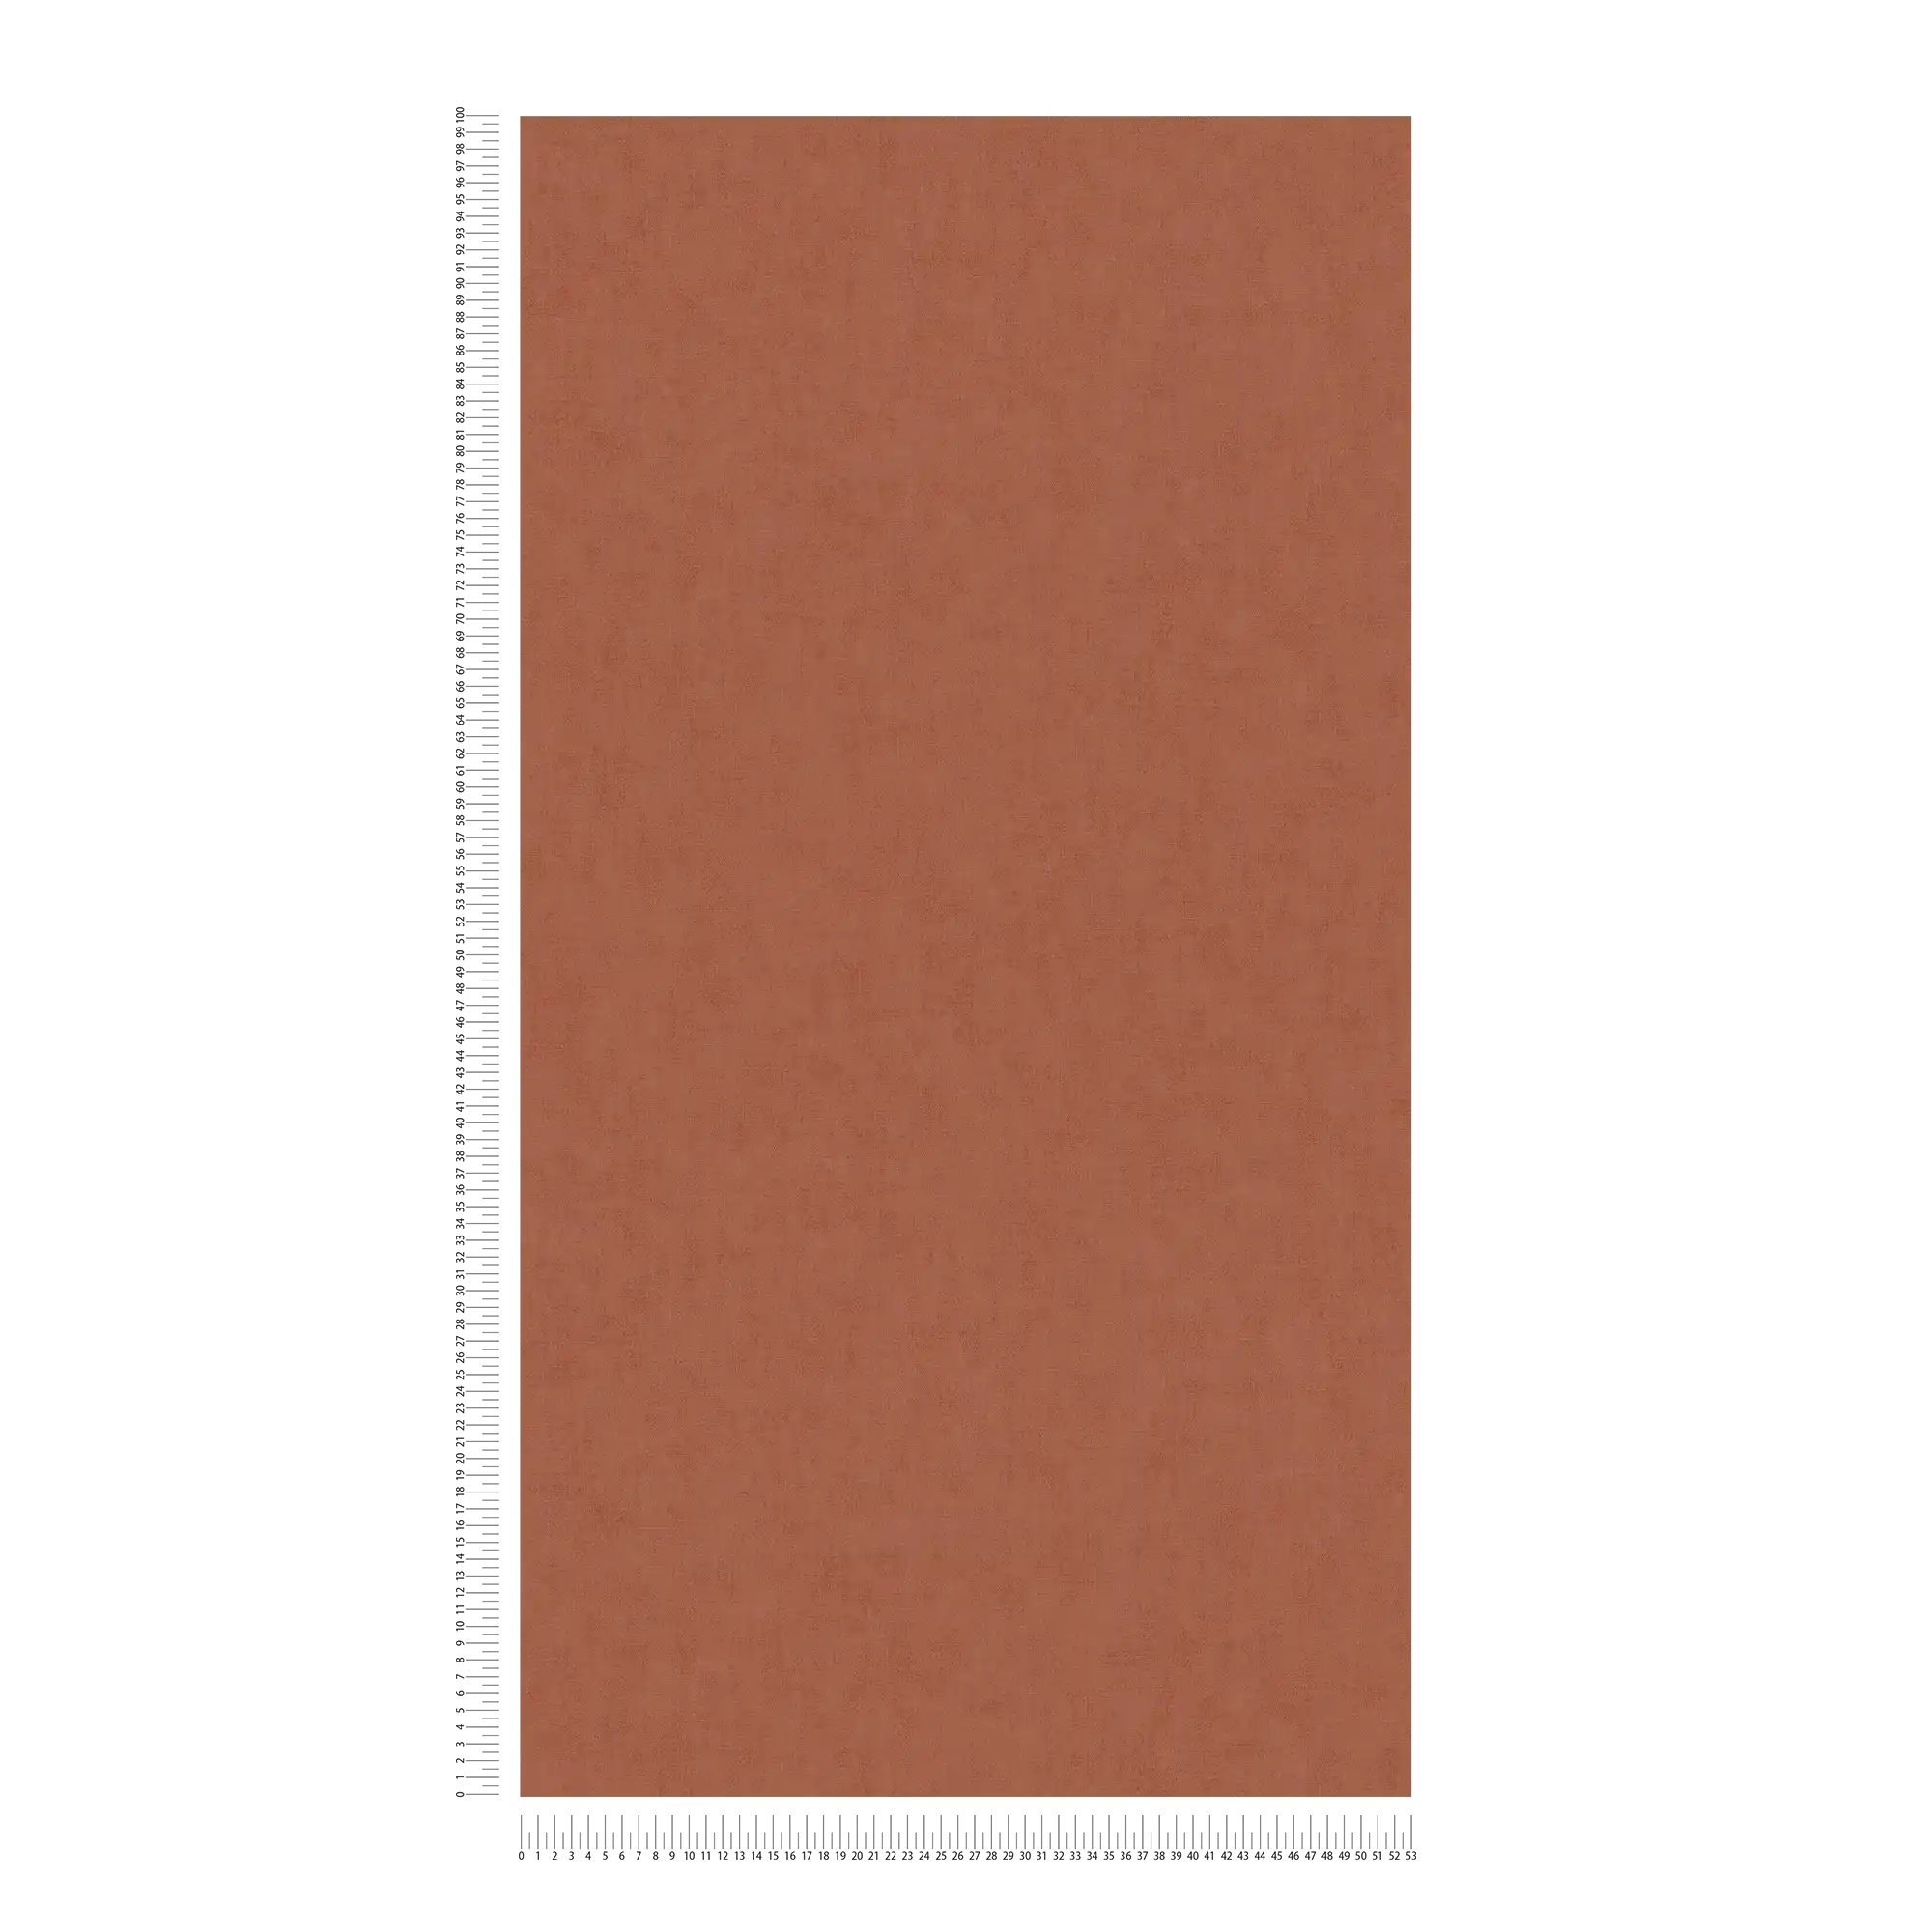             Papel pintado no tejido de aspecto de lino con un sutil dibujo - marrón, naranja
        